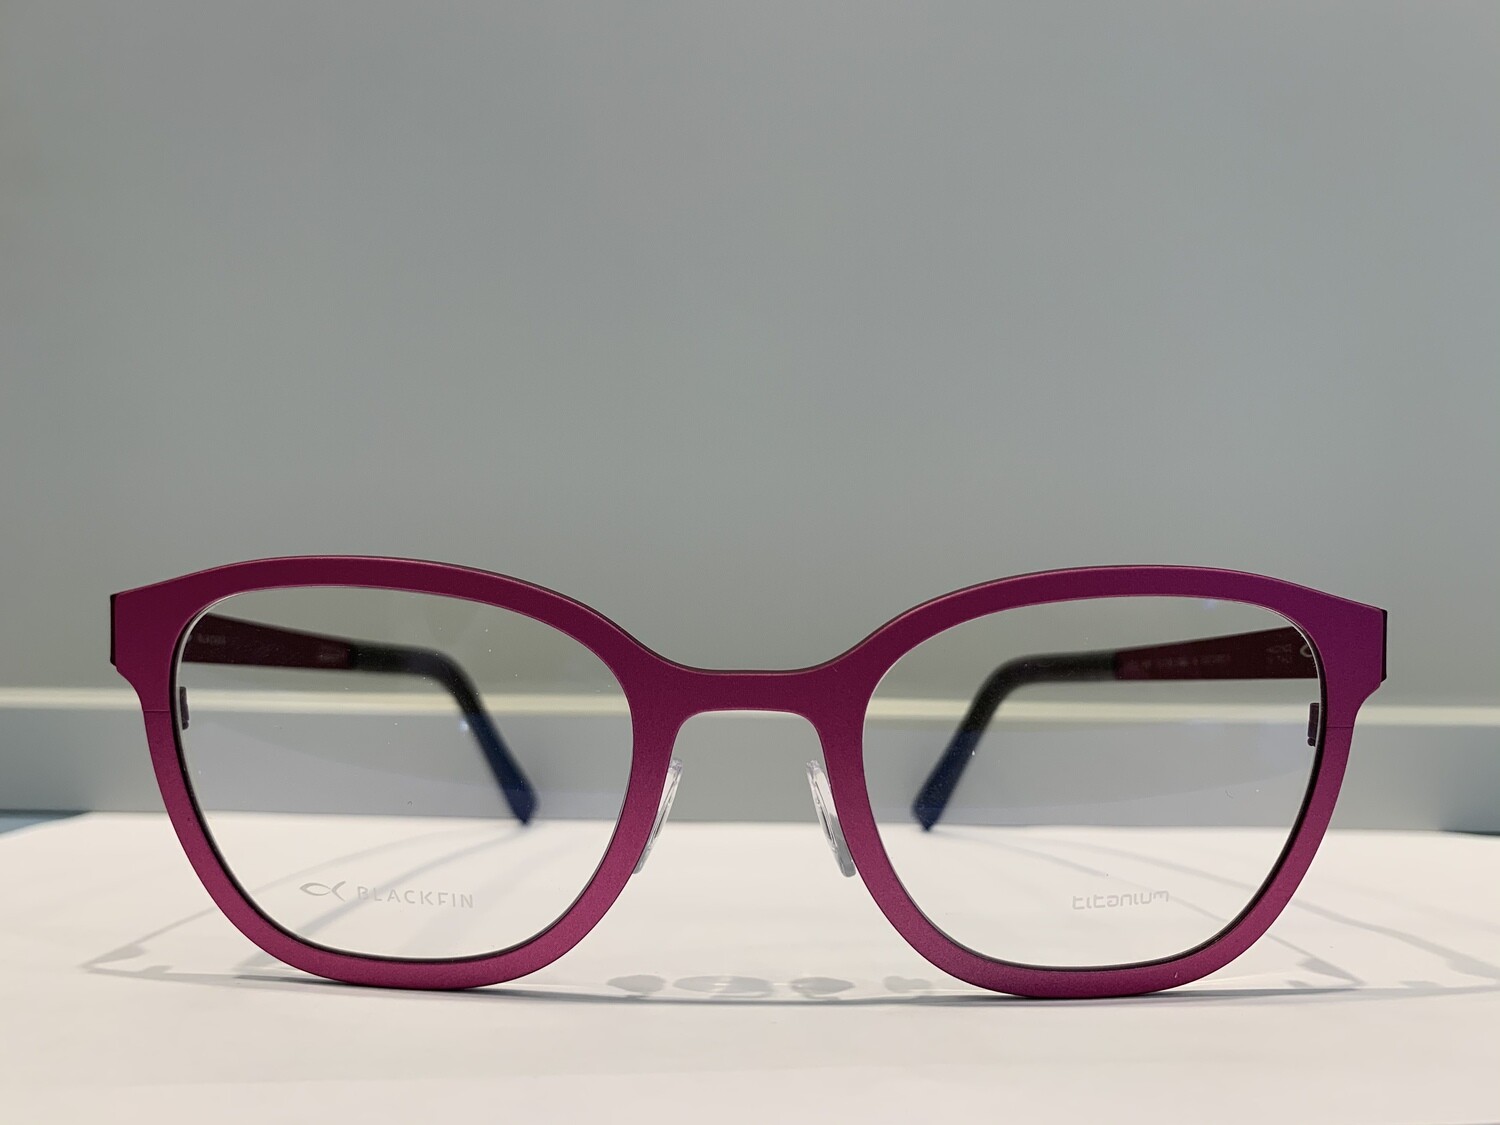 BLACKFIN ANFIELD 897 1080 fucsia e purple occhiali